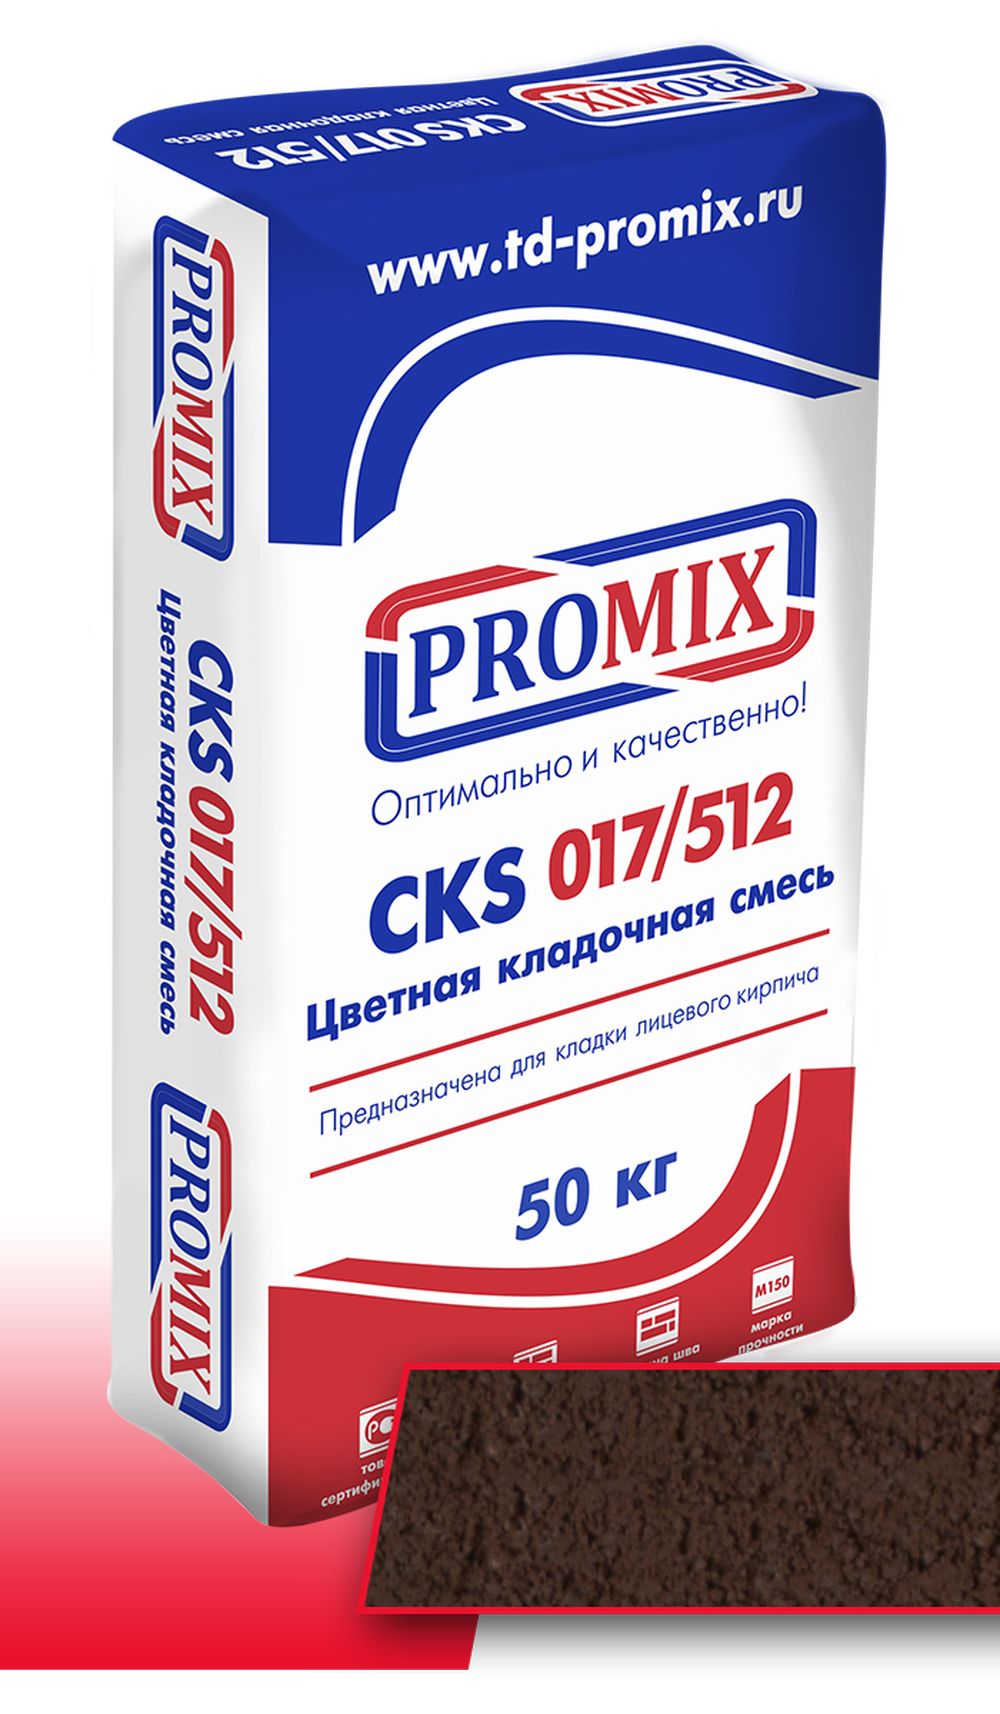 Promix Цветная кладочная смесь CKS 017 Коричневая, 50 кг